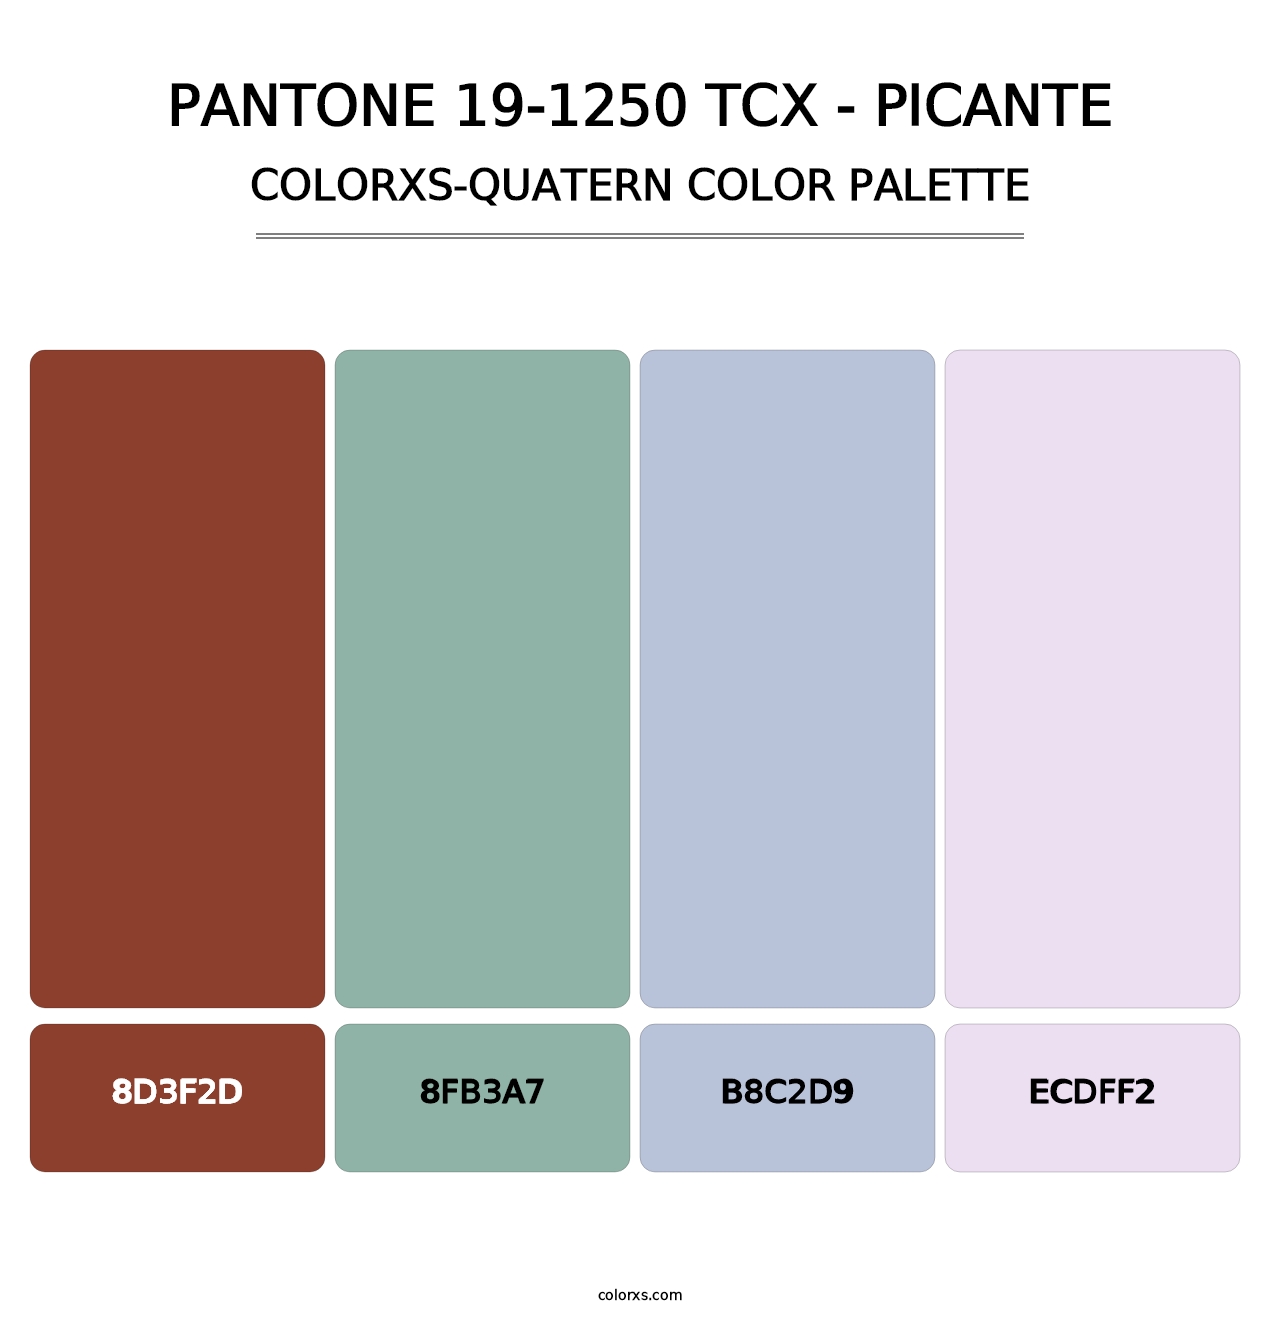 PANTONE 19-1250 TCX - Picante - Colorxs Quatern Palette